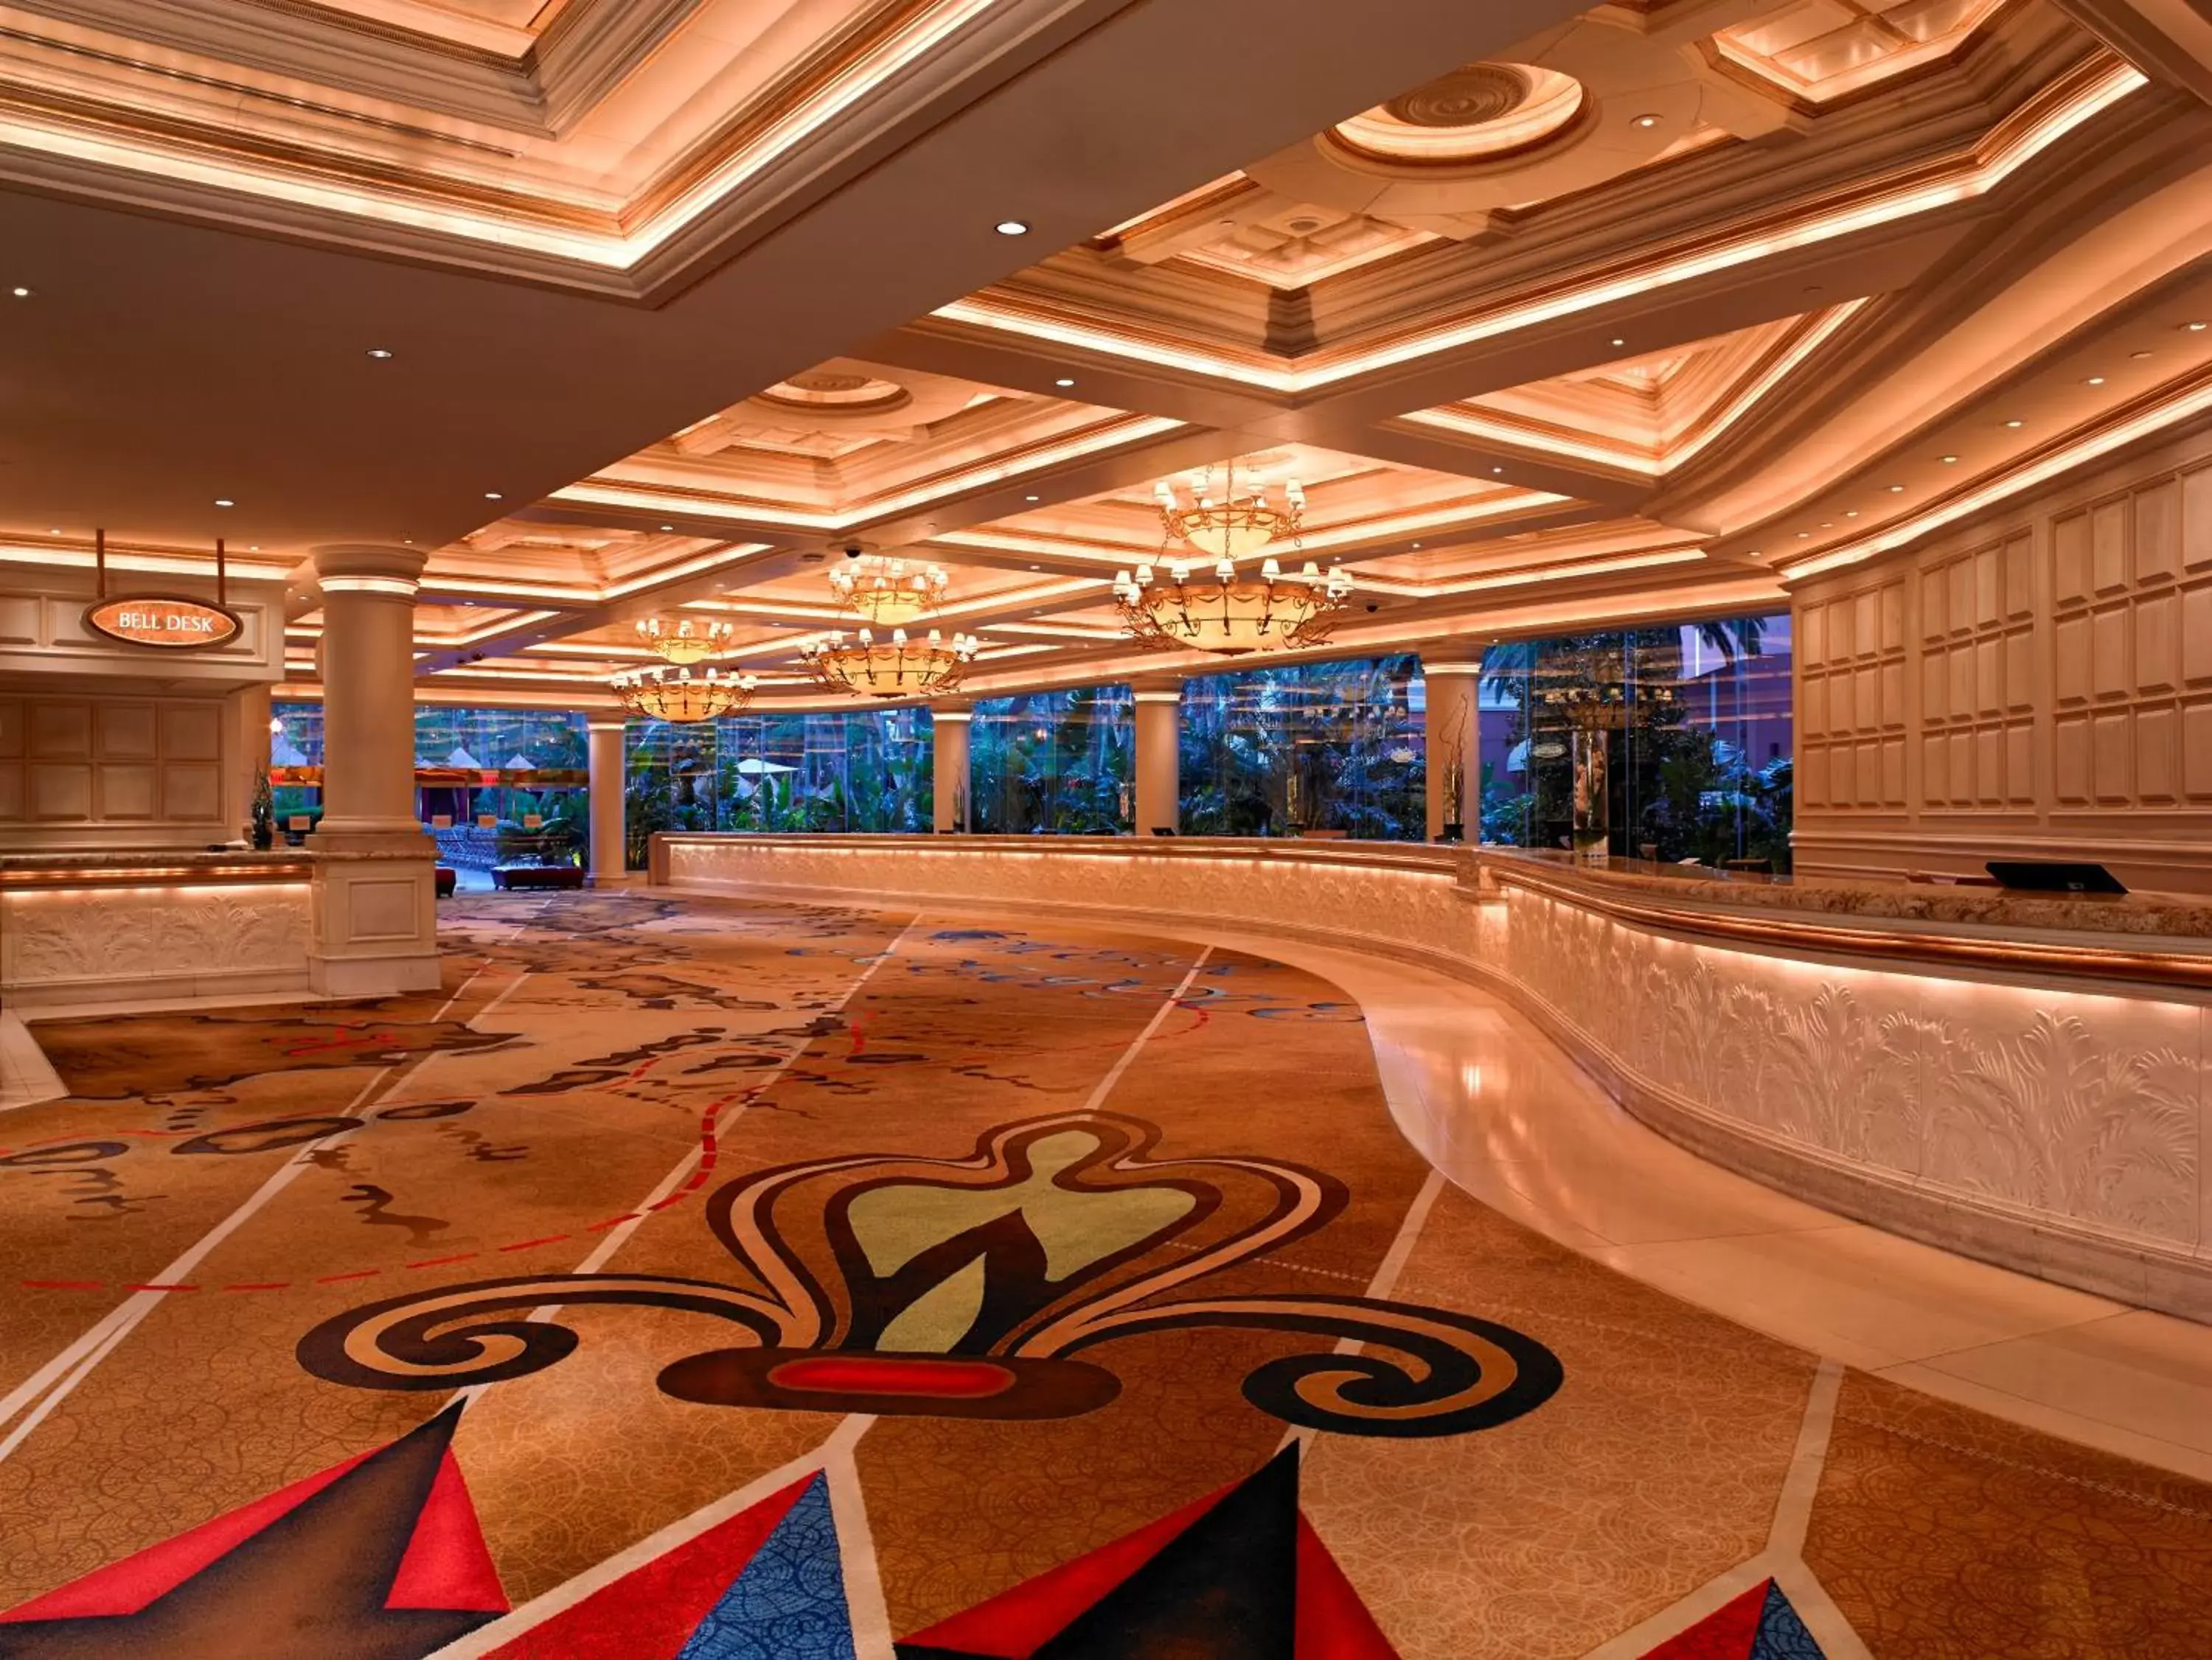 Lobby or reception in Treasure Island - TI Las Vegas Hotel & Casino, a Radisson Hotel